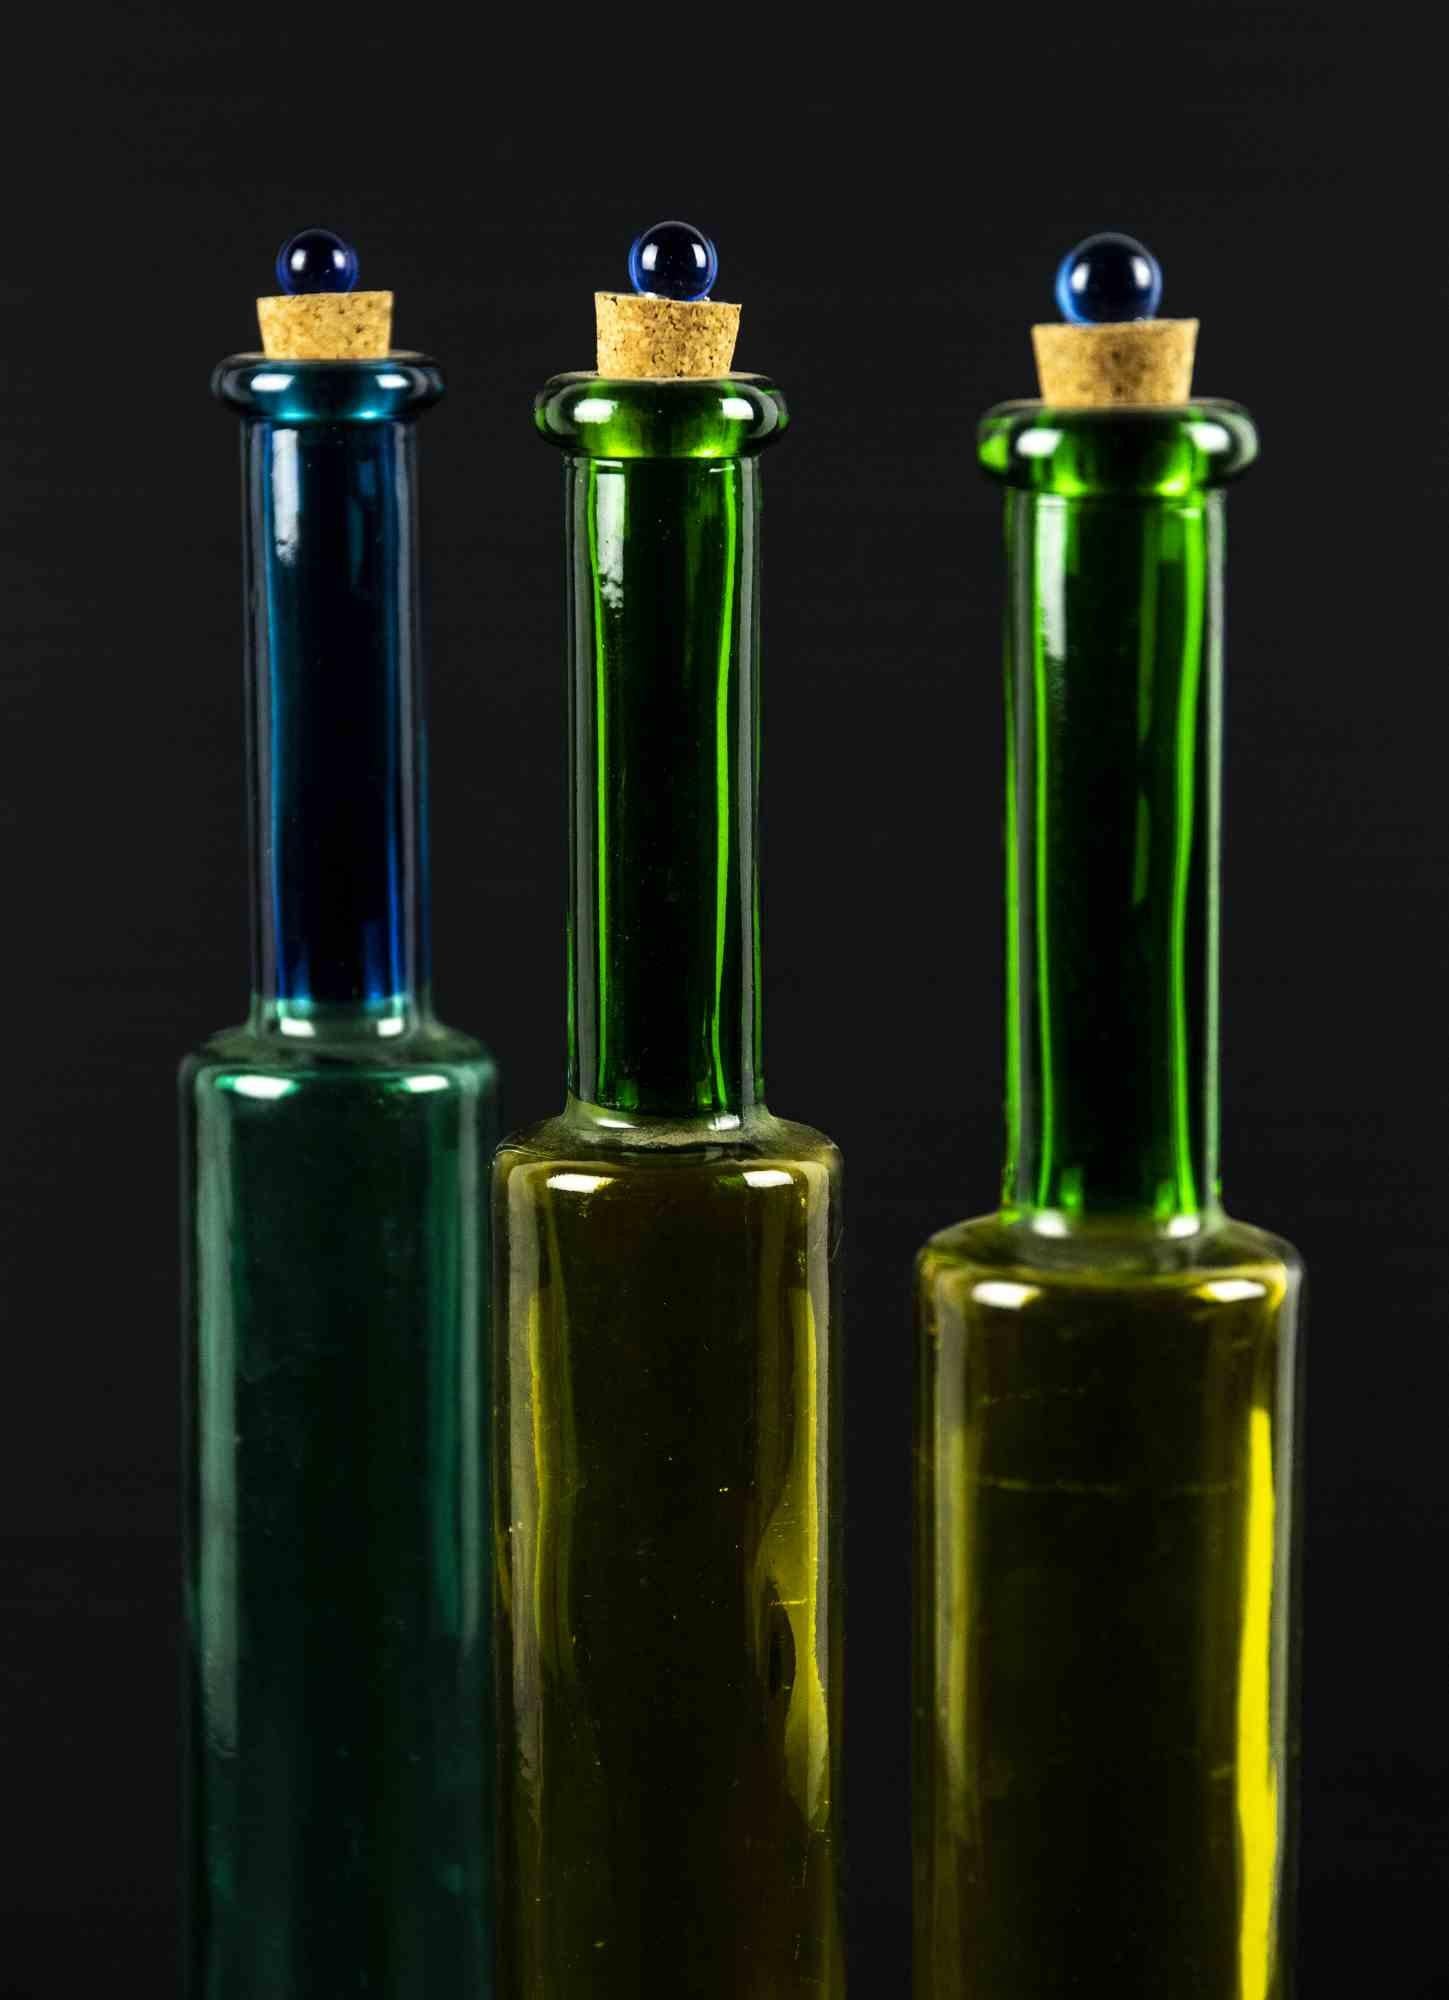 Vintage farbigen Glasflaschen ist ein originelles dekoratives Objekt in den 1970er Jahren realisiert.

Original Kunstglas.

Hergestellt in Italien.

Abmessungen: 37 x 5 cm. 

Perfekte Bedingungen.